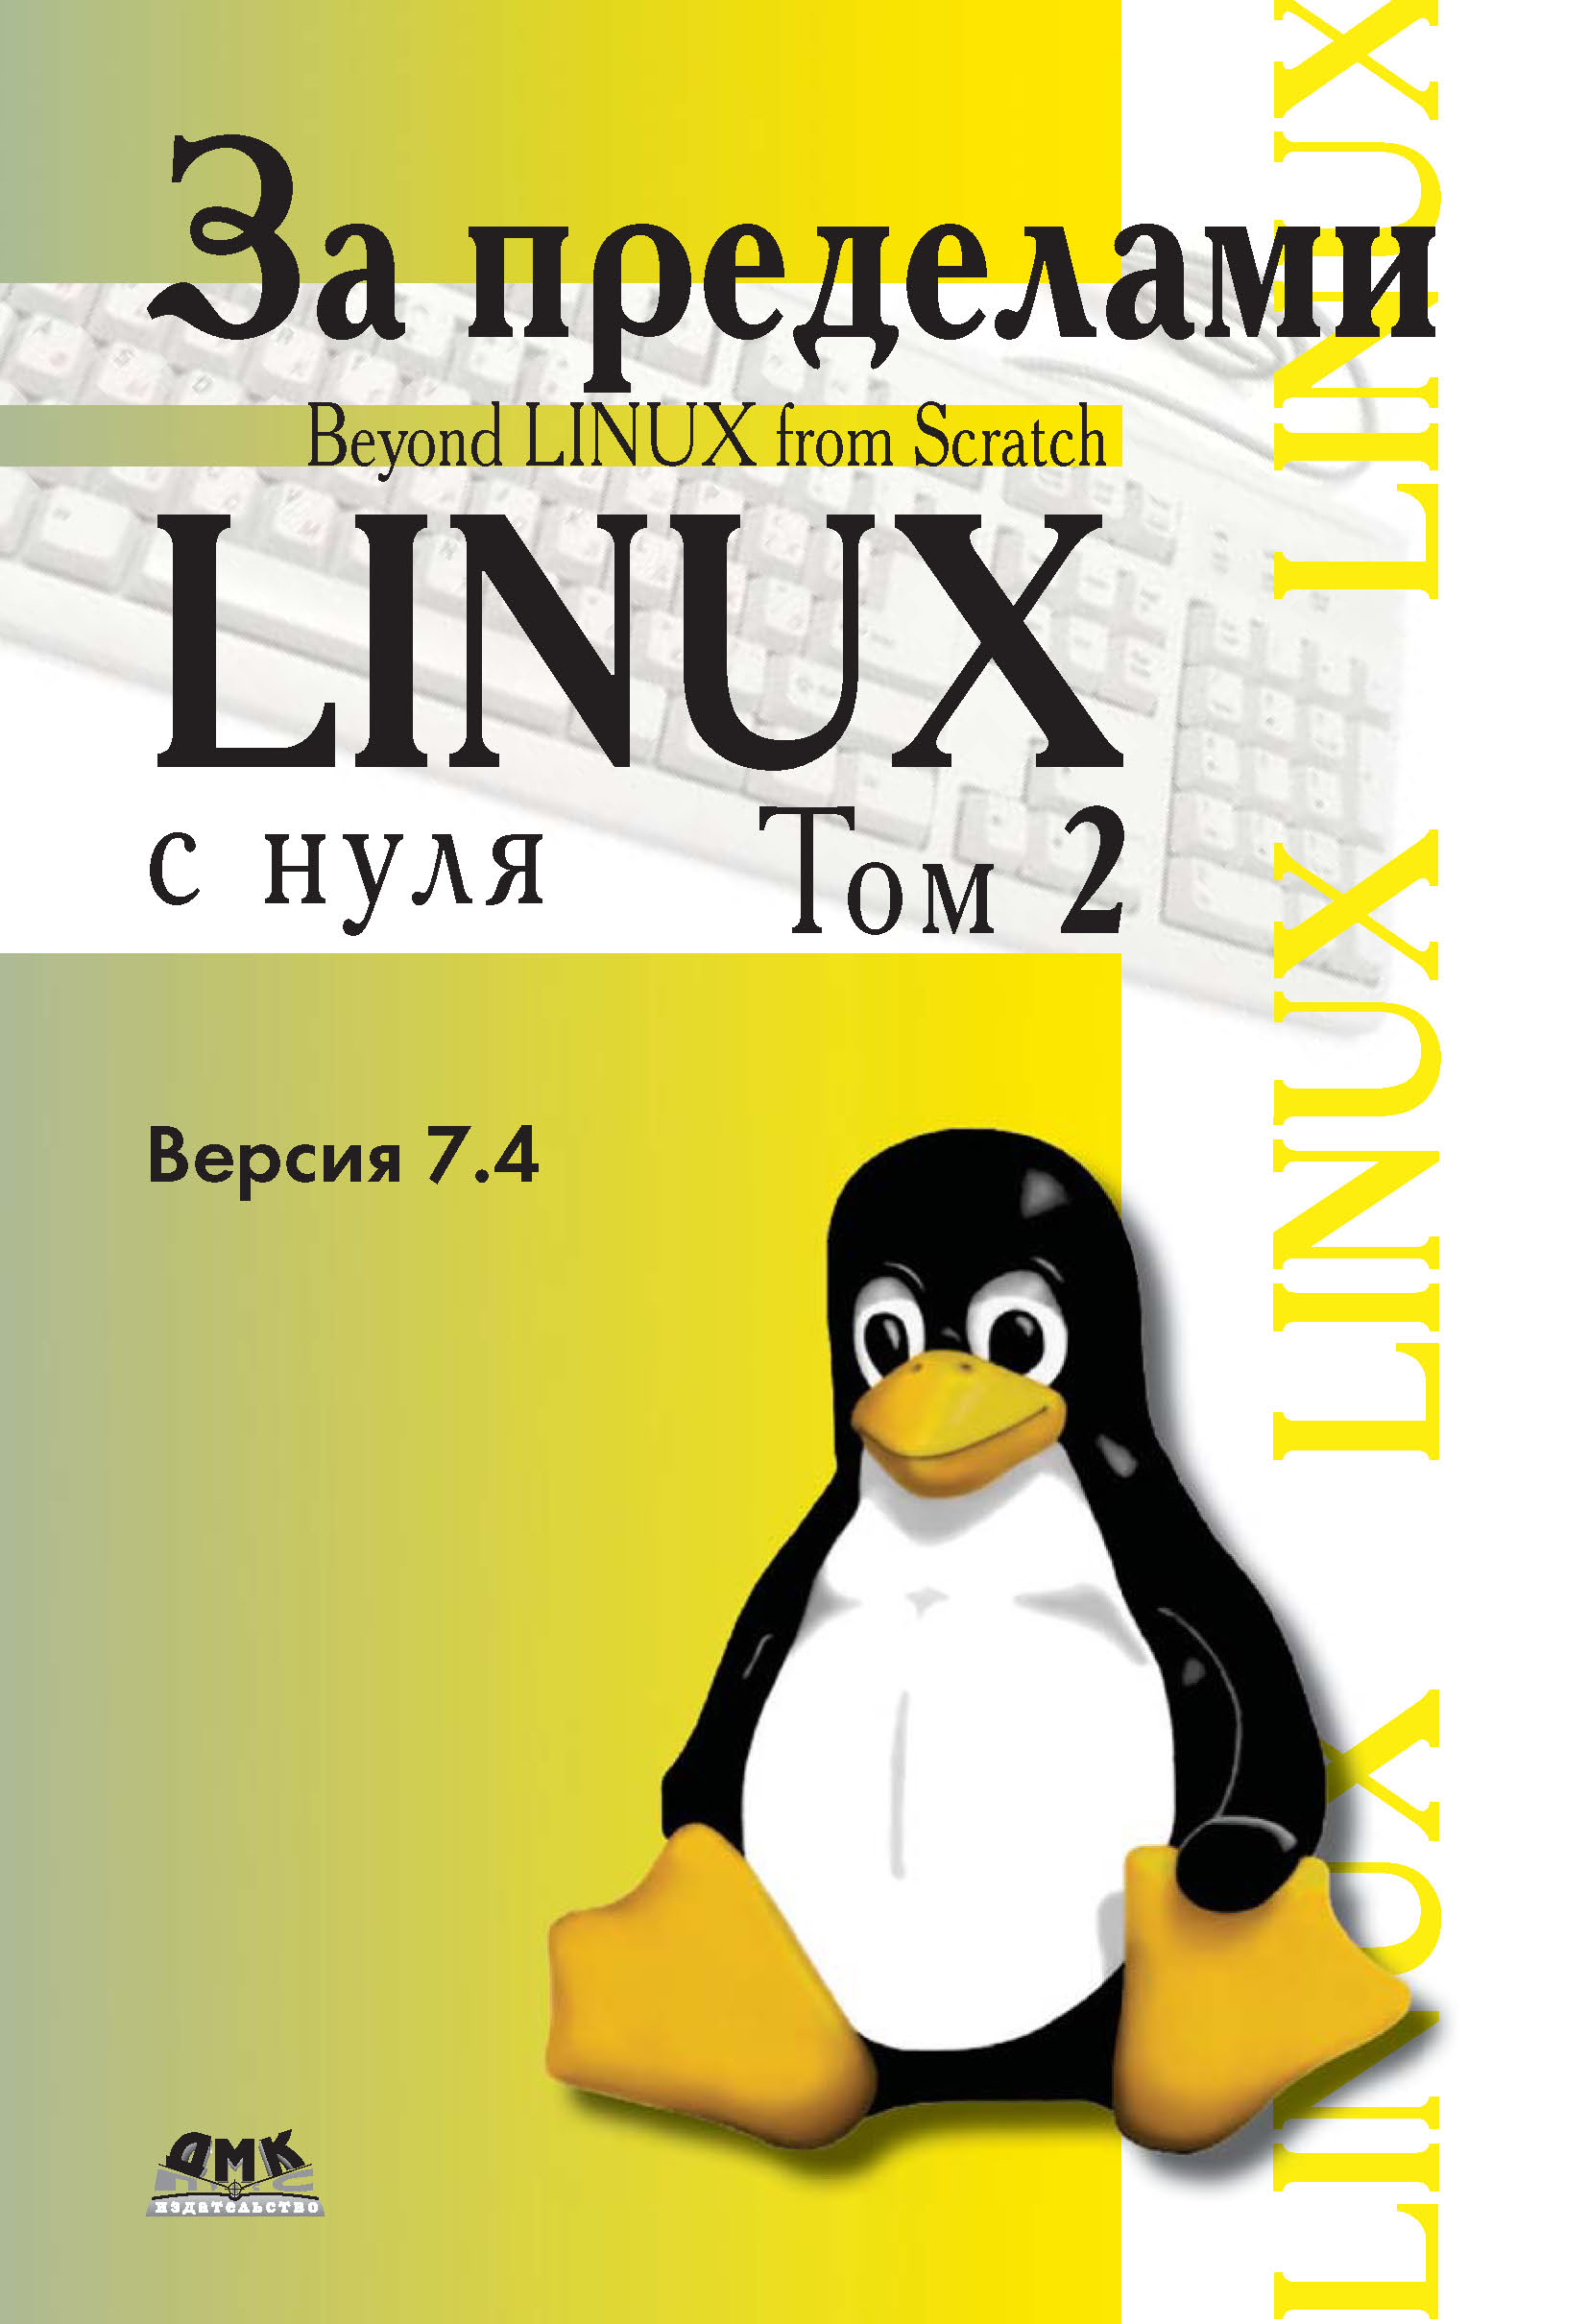 Книга Linux From Scratch За пределами проекта «Linux® с нуля». Версия 7.4. Том 2 созданная Команда разработчиков BLFS, Н. А. Ромоданов может относится к жанру зарубежная компьютерная литература, интернет, ОС и сети, программы. Стоимость электронной книги За пределами проекта «Linux® с нуля». Версия 7.4. Том 2 с идентификатором 9998448 составляет 639.00 руб.